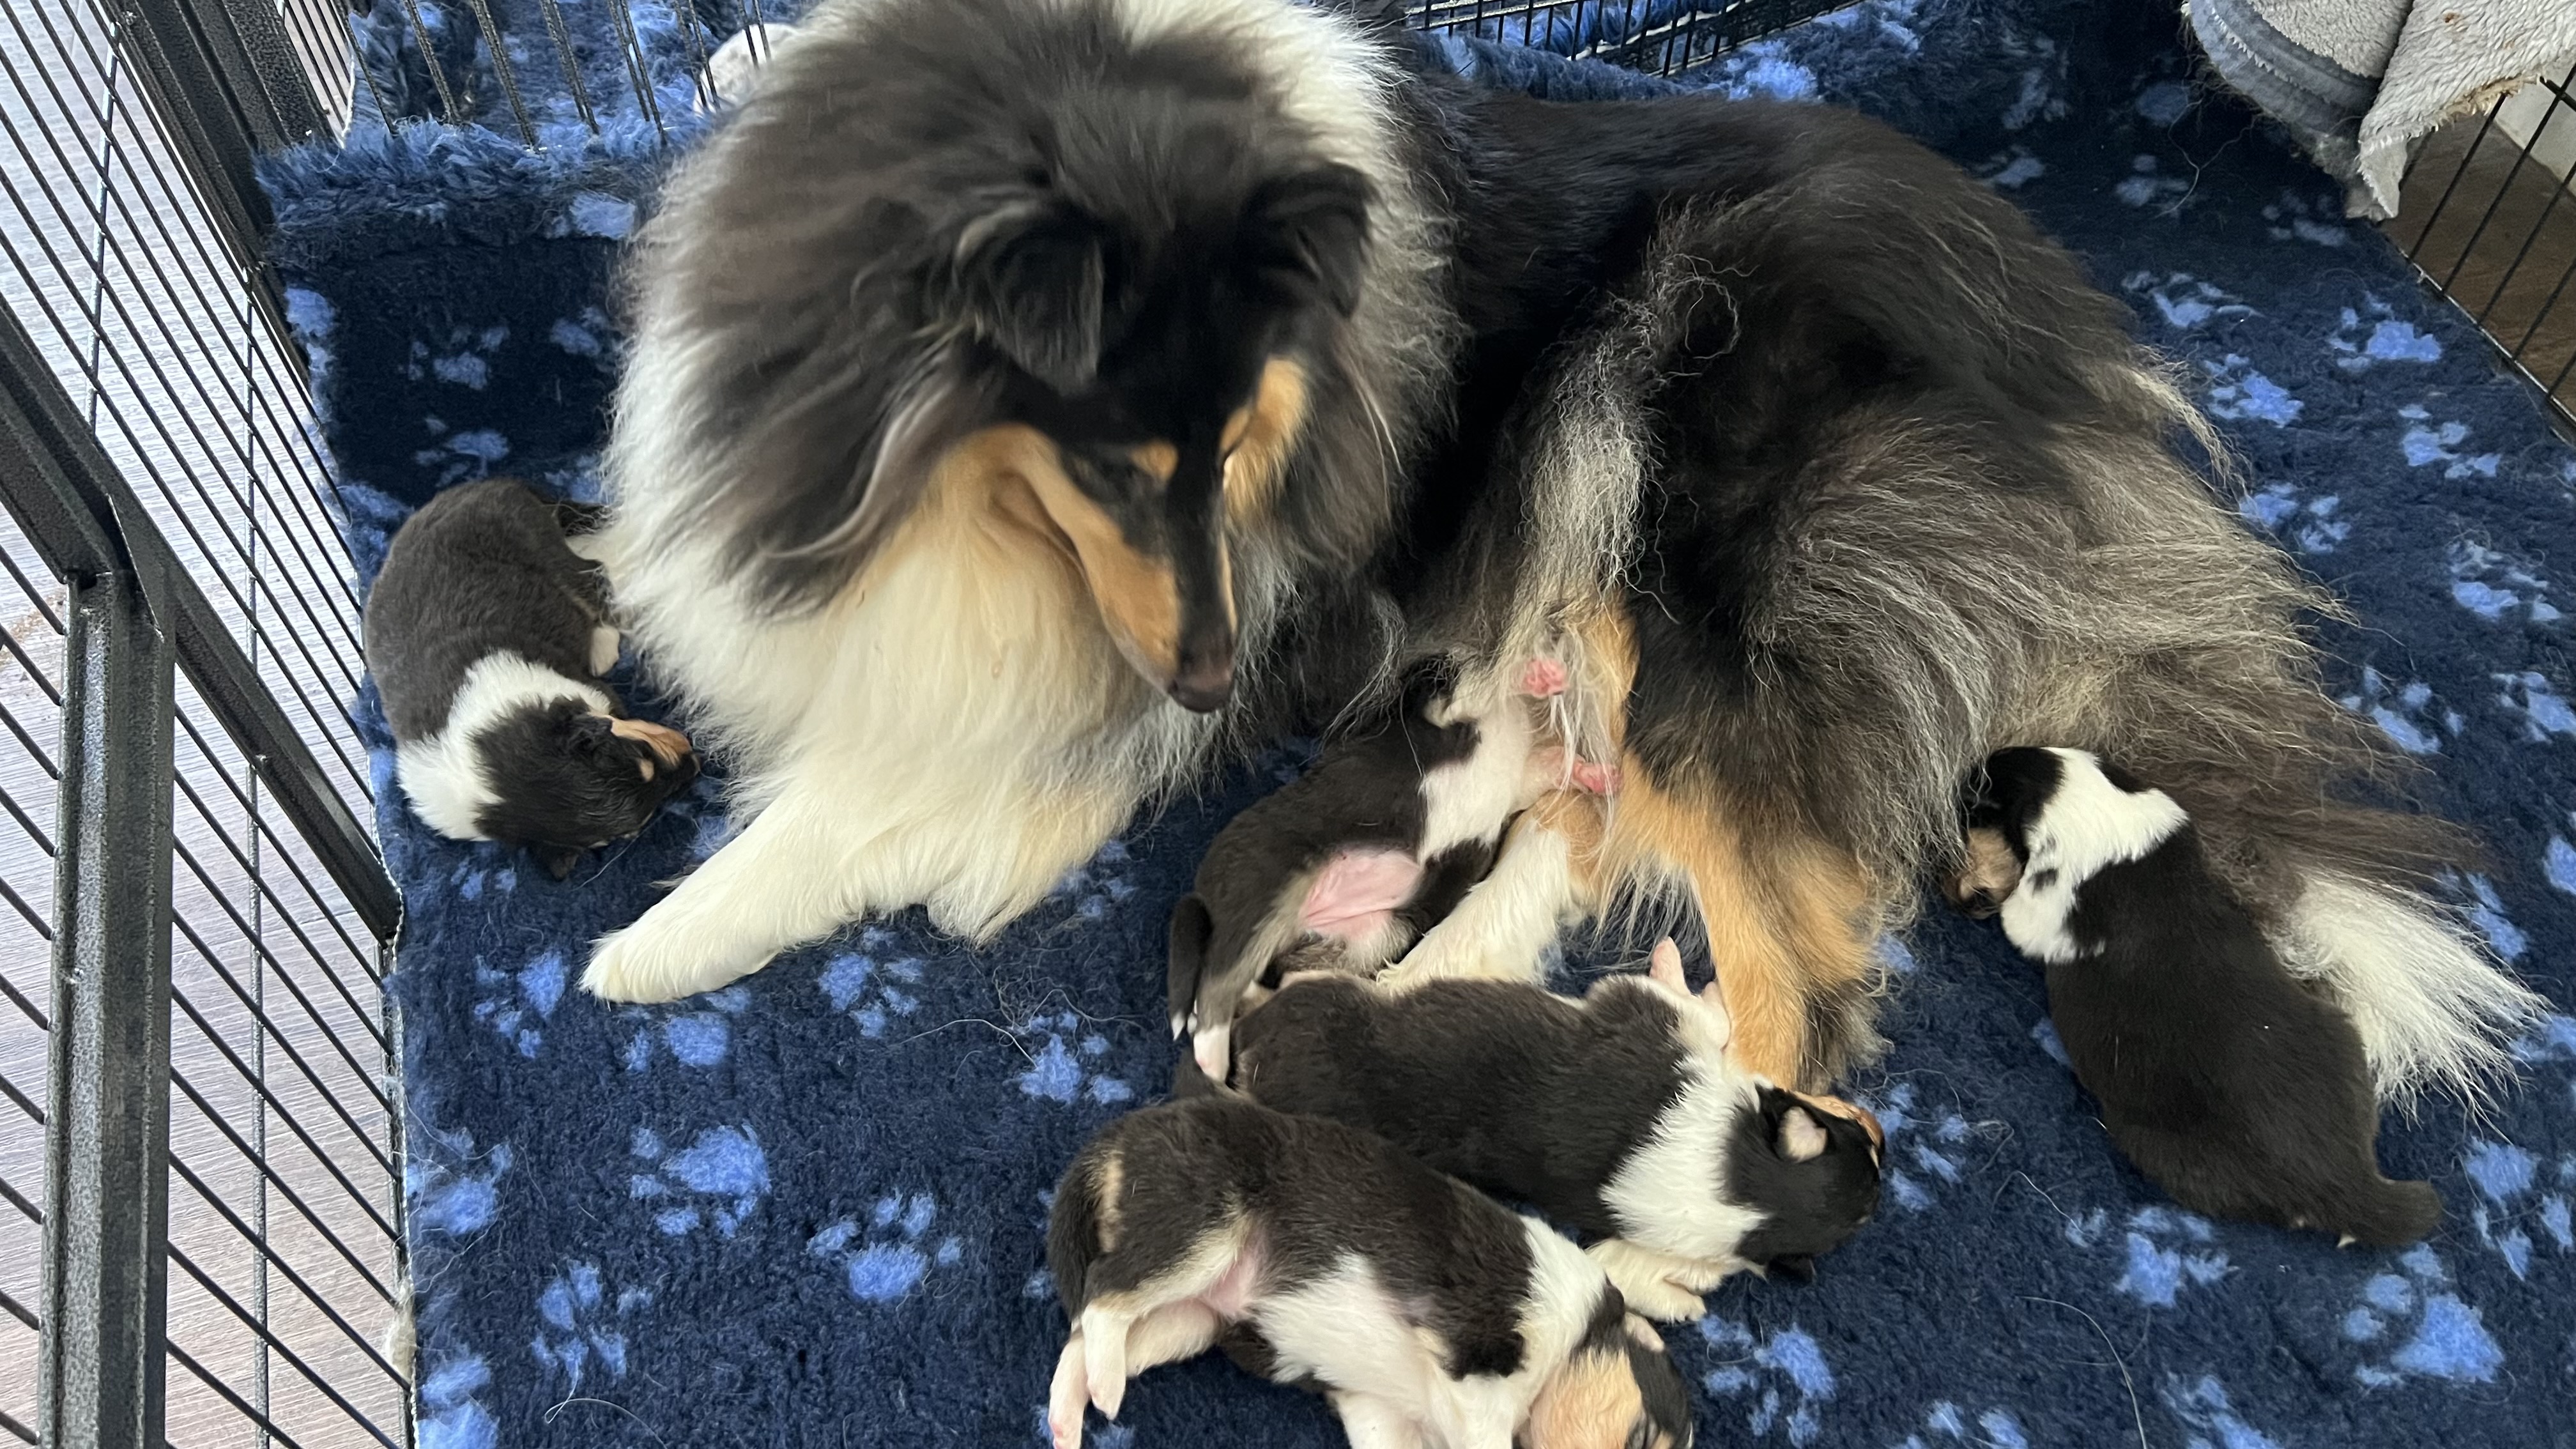 Mum with pups